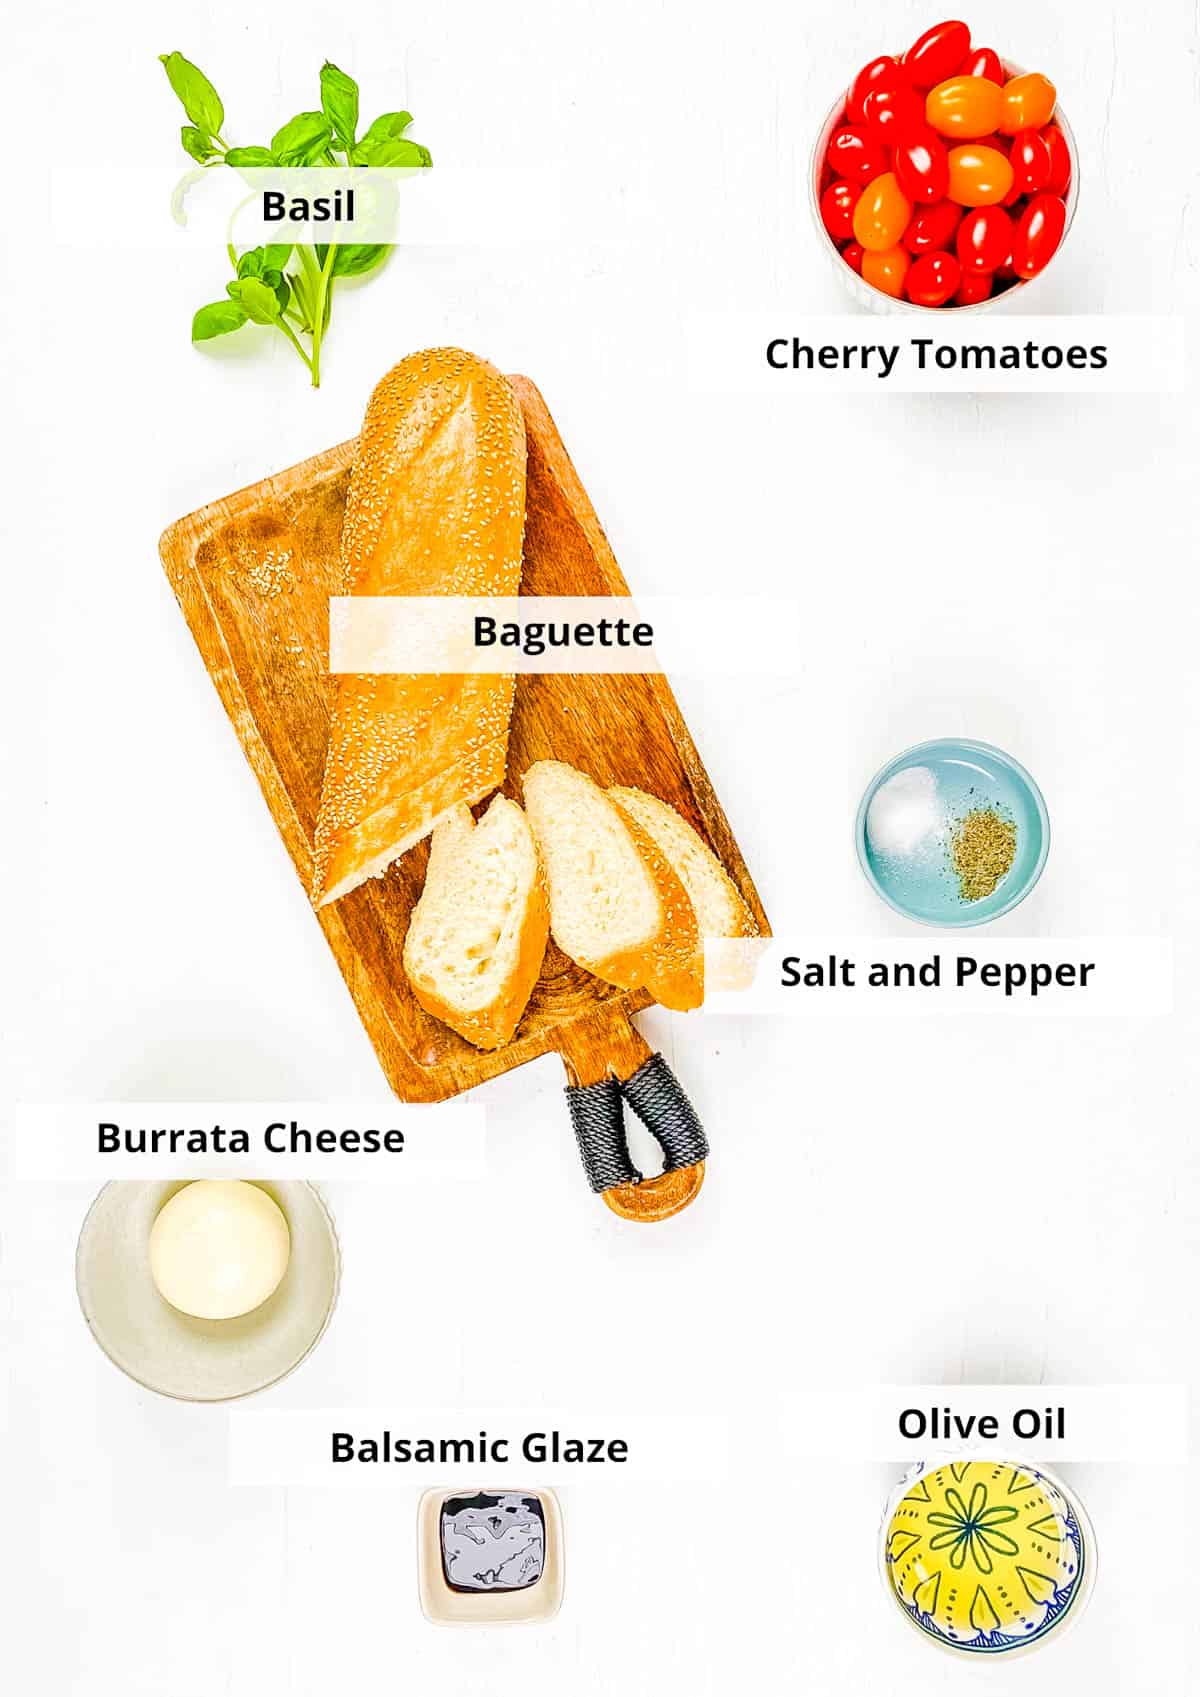 Ingredients for bruschetta burrata recipe on a white background.